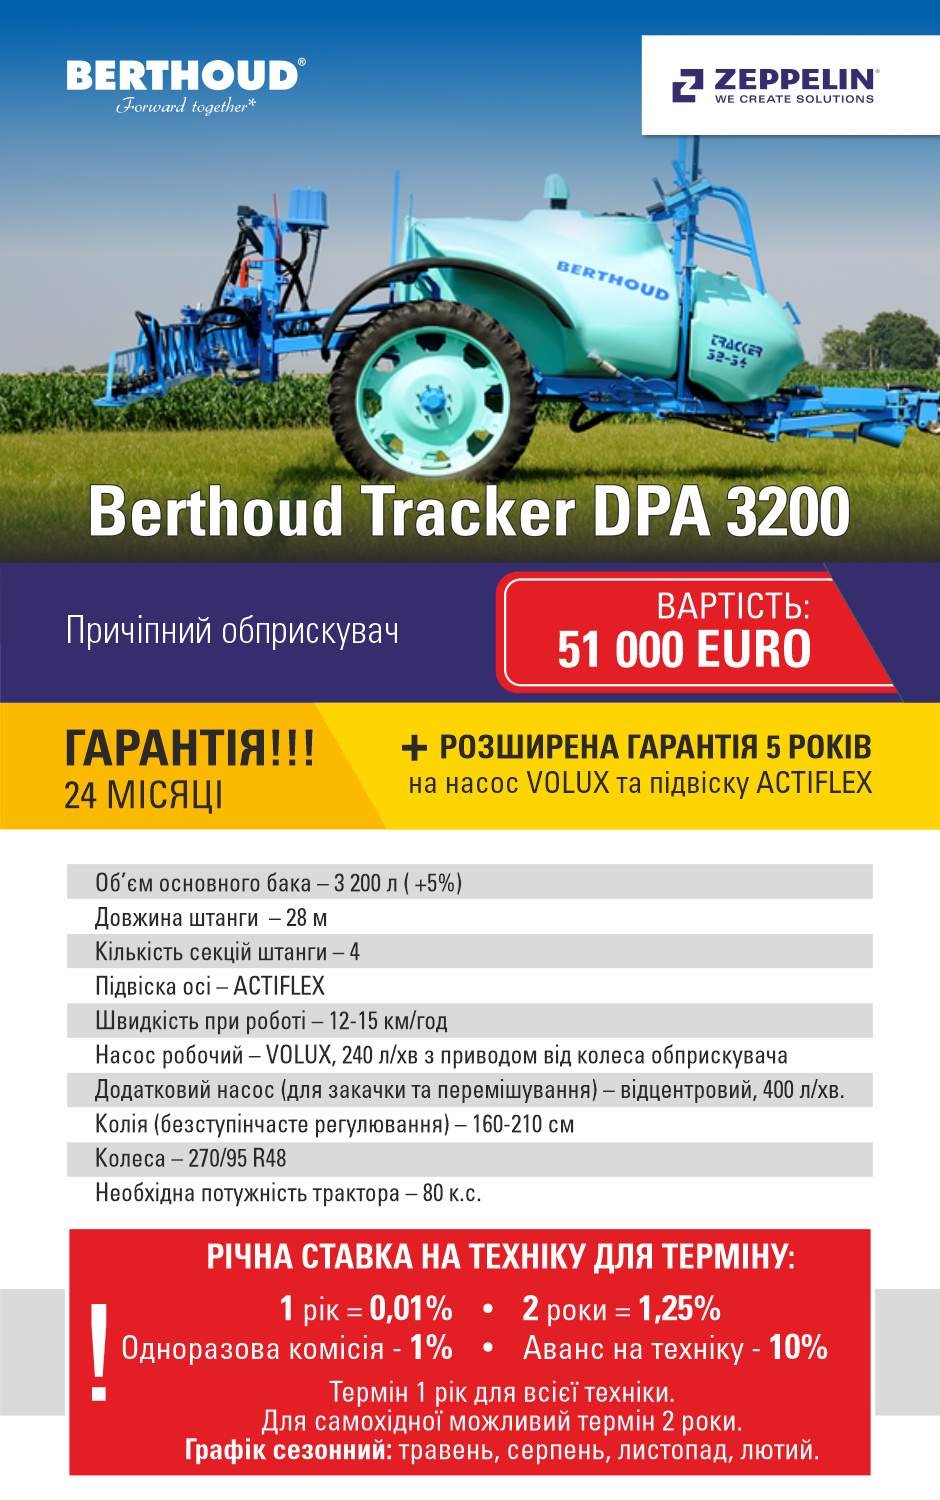 Berthoud Tracker DPA 3200